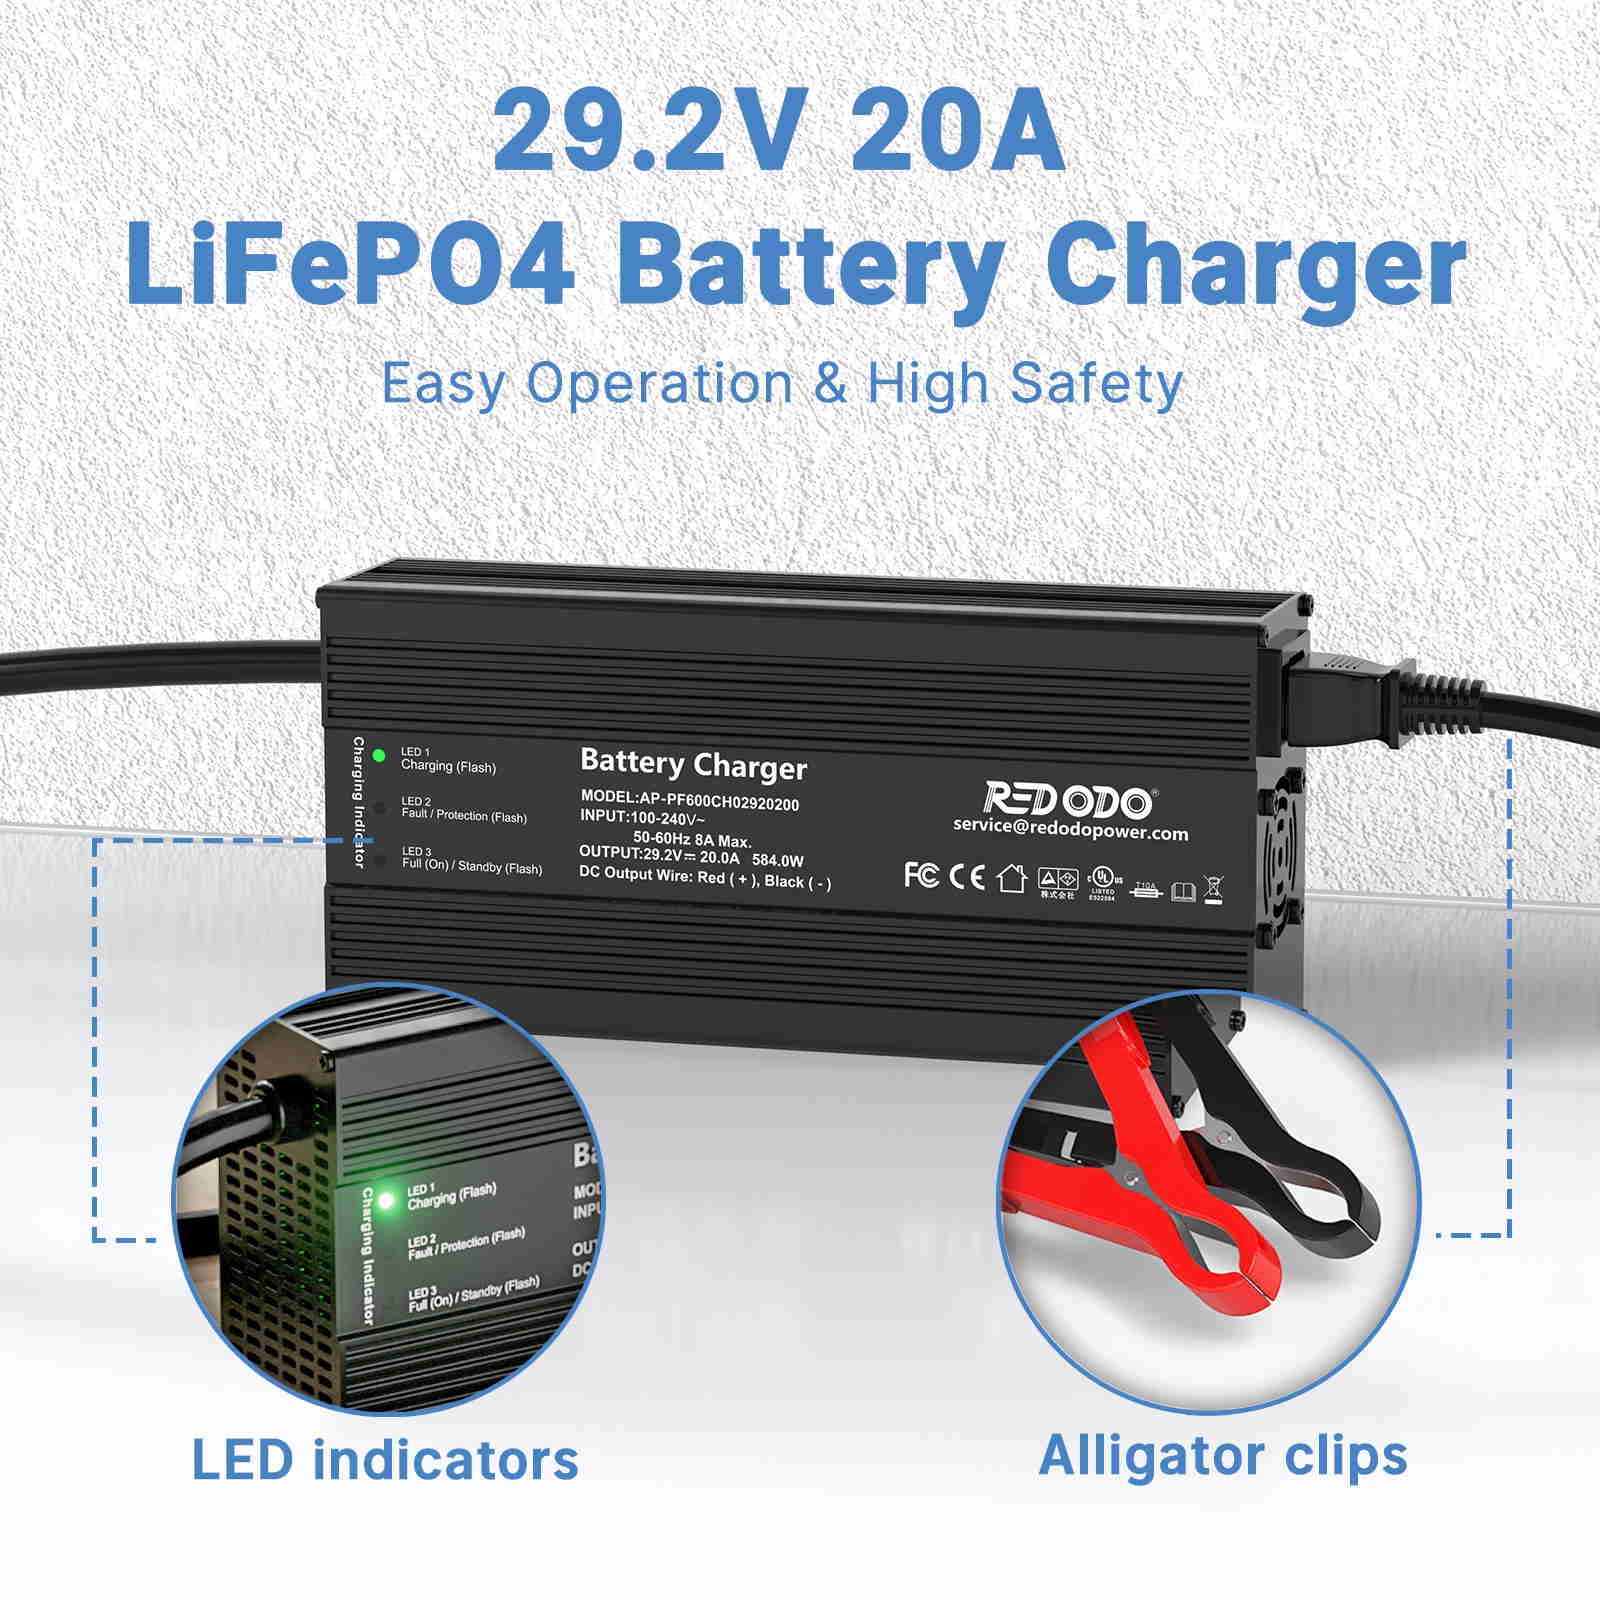 Redodo 29.2V 20A LiFePO4 Battery Charger Redodo Power